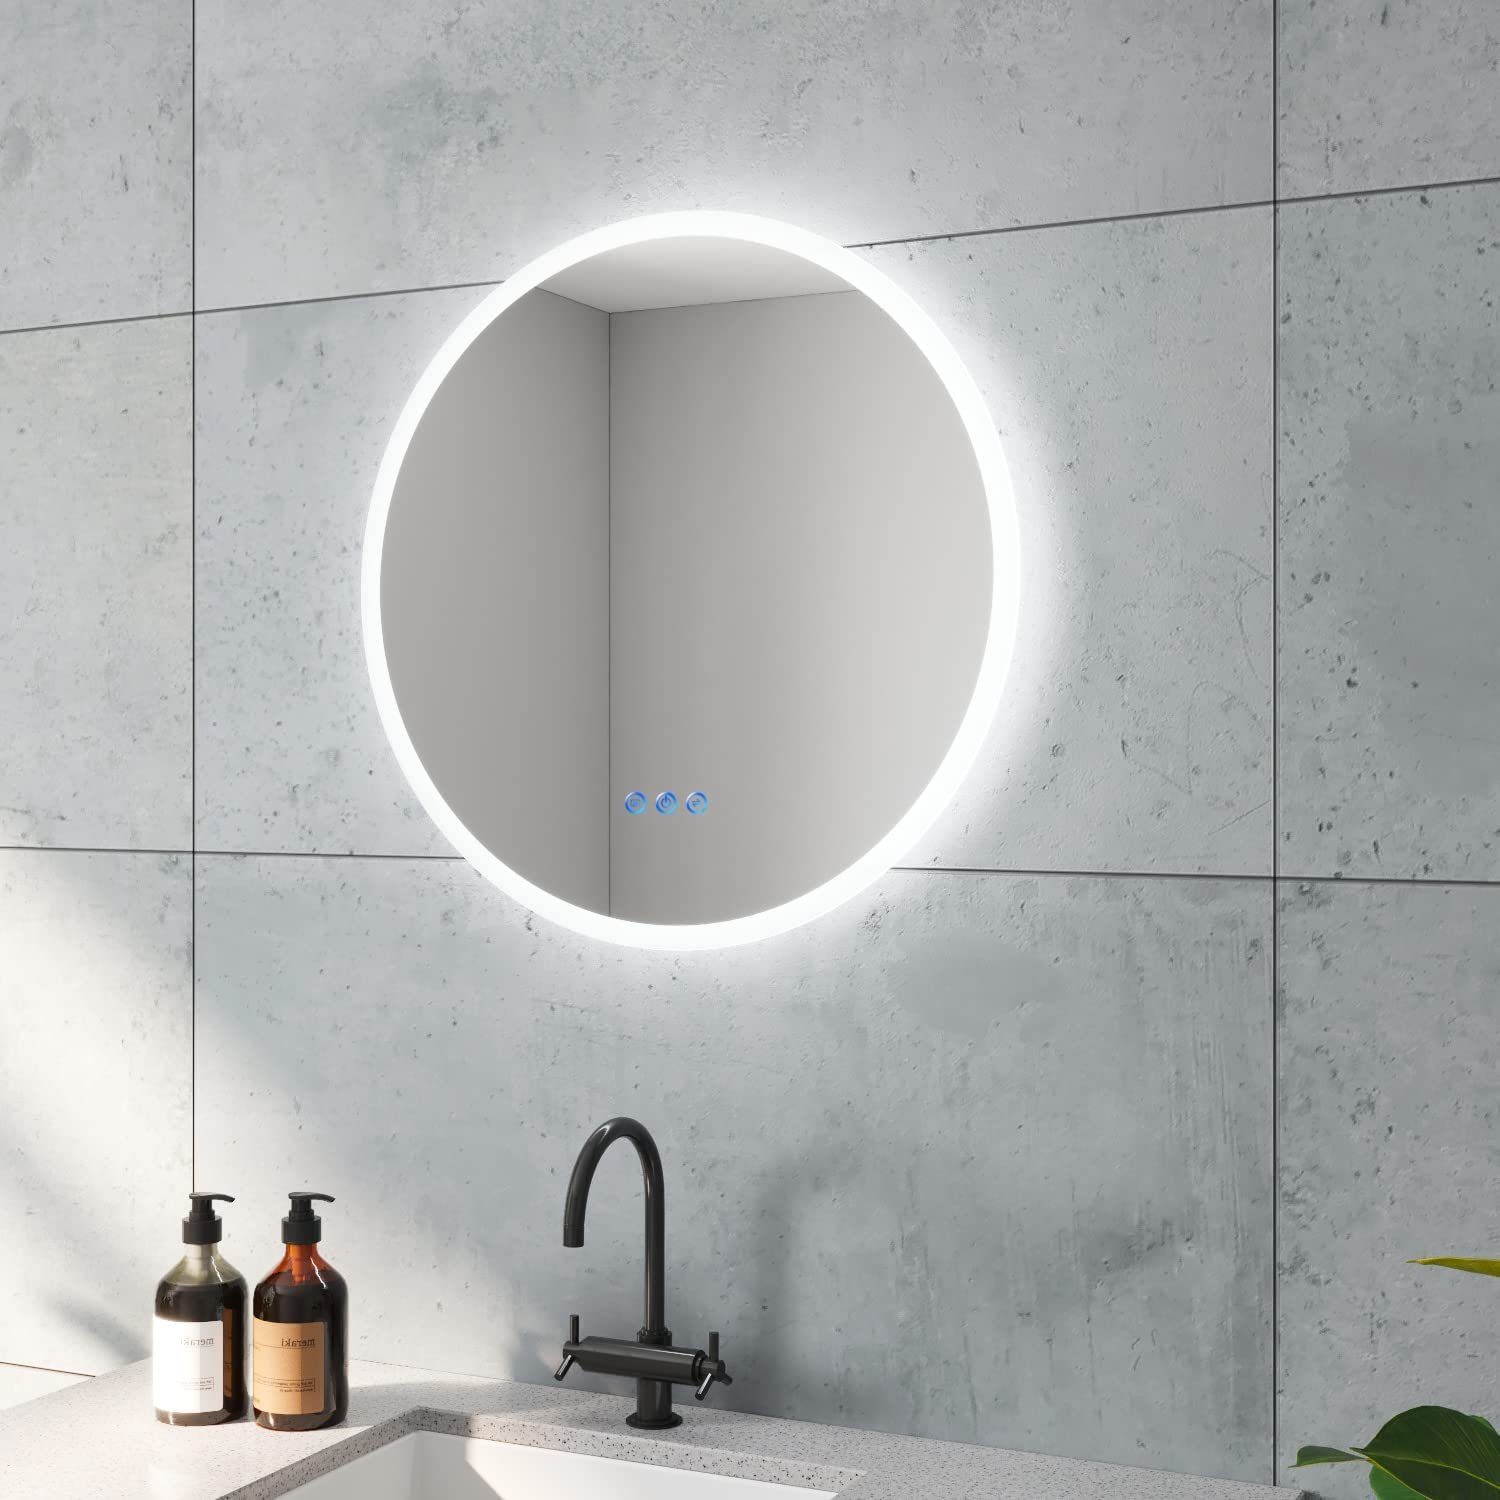 AQUALAVOS Badspiegel Rund Badspiegel mit LED Beleuchtung Dimmbar Beschlagfrei Wandspiegel, 6400K Kaltweiß & Warmweiß 3000K, Touchschalter, Energiesparend | Badspiegel